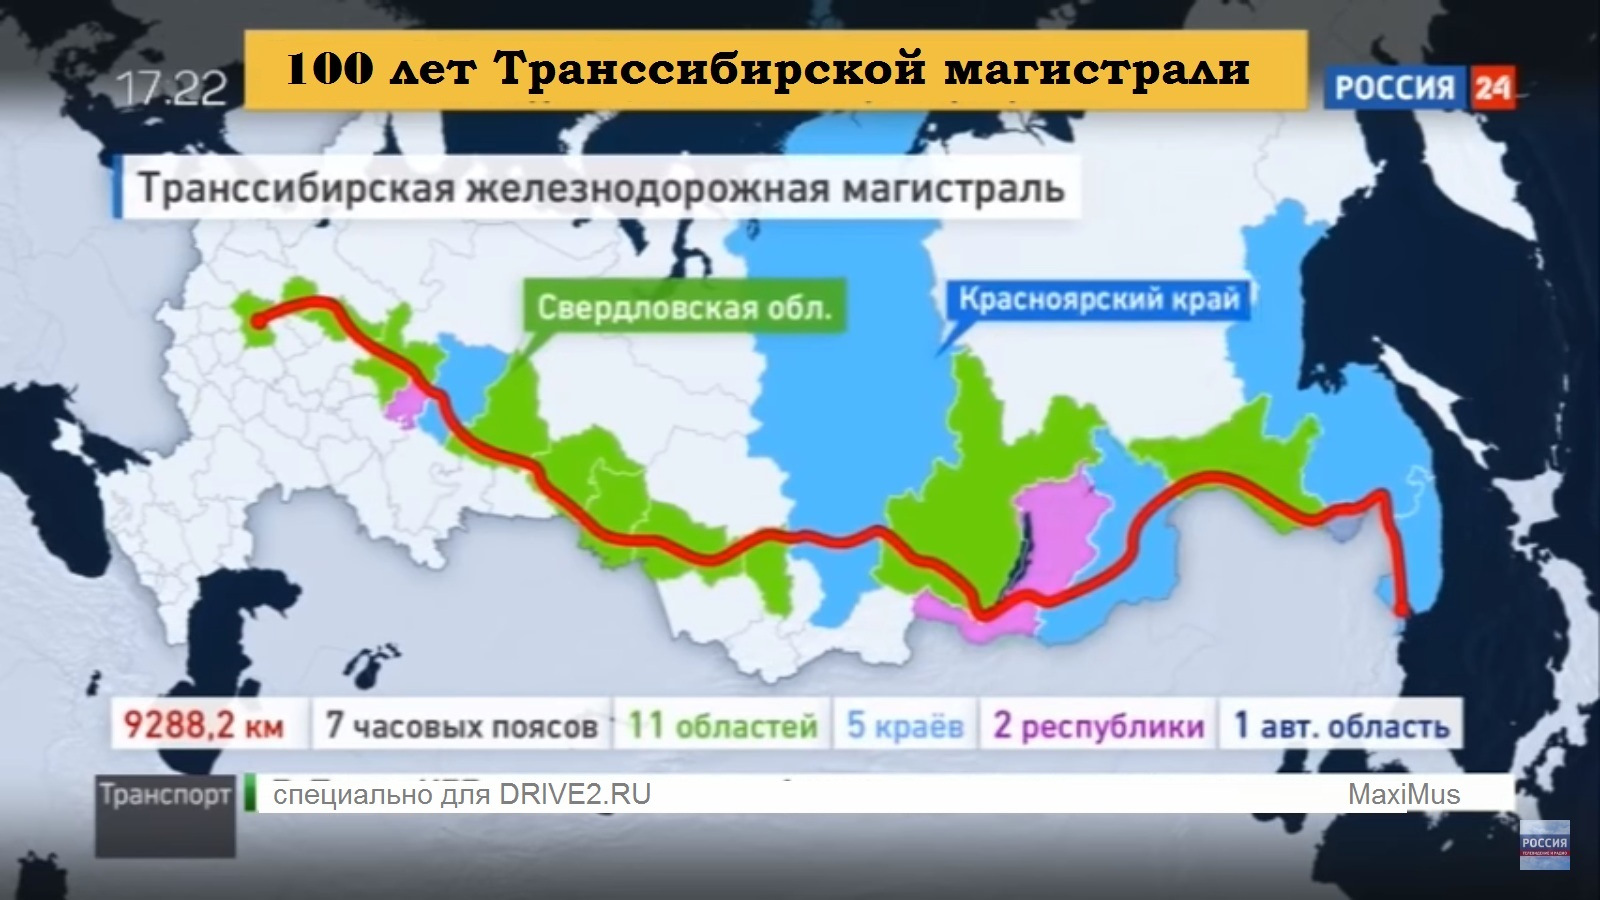 Через какие крупные города проходит транссибирская магистраль. Транссибирская магистраль на карте. Транссиби́рская Железнодорожная магистраль на карте. Транссибирская магистраль Владивосток. Транссибирская Железнодорожная магистраль на карте.